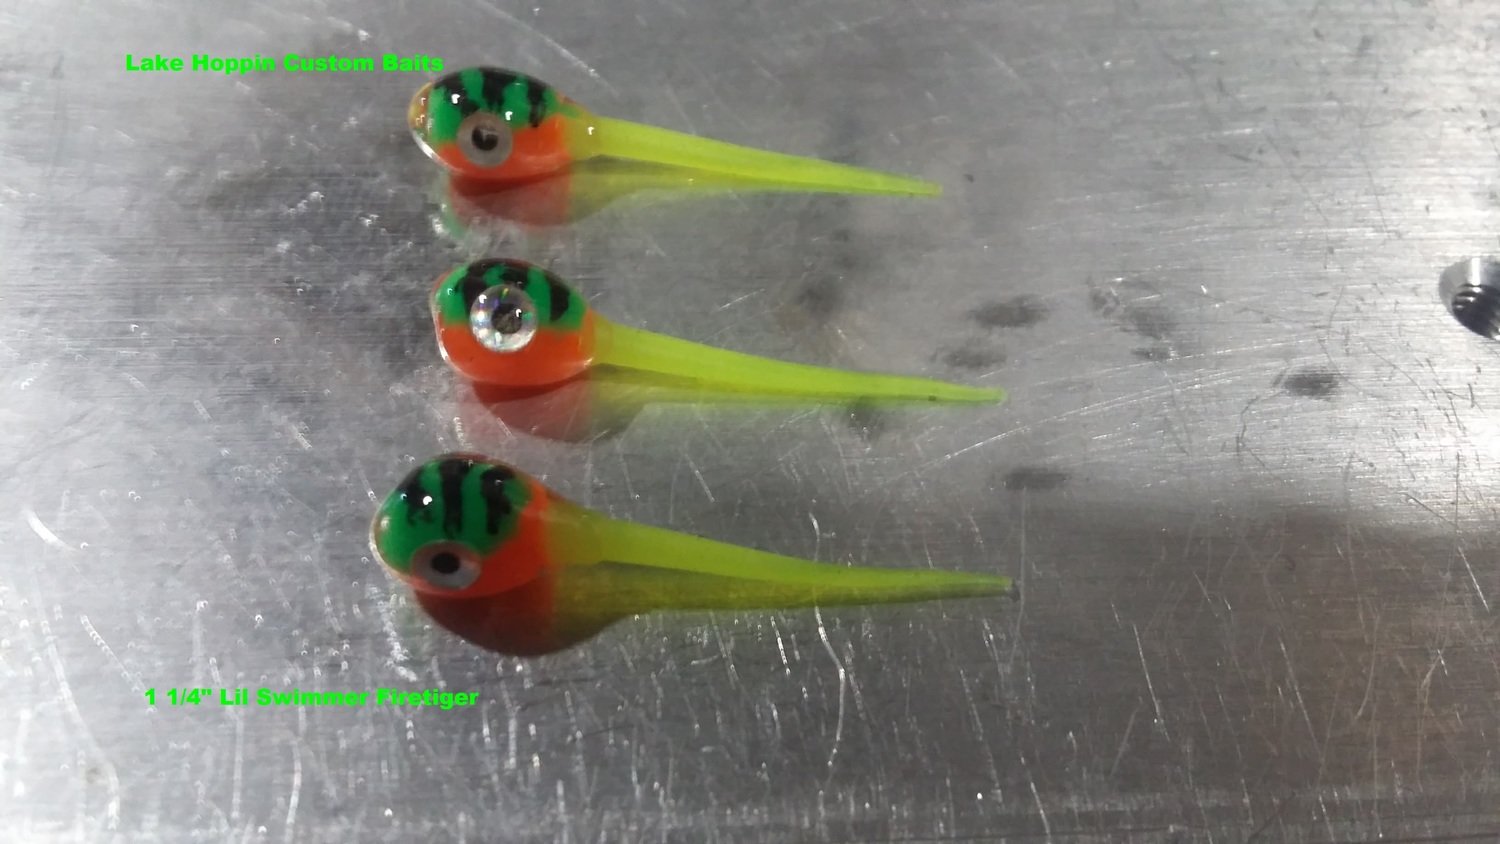 1 1/4" tiger perch/chartruse tail Custom Lil Swimmers 10 per pk